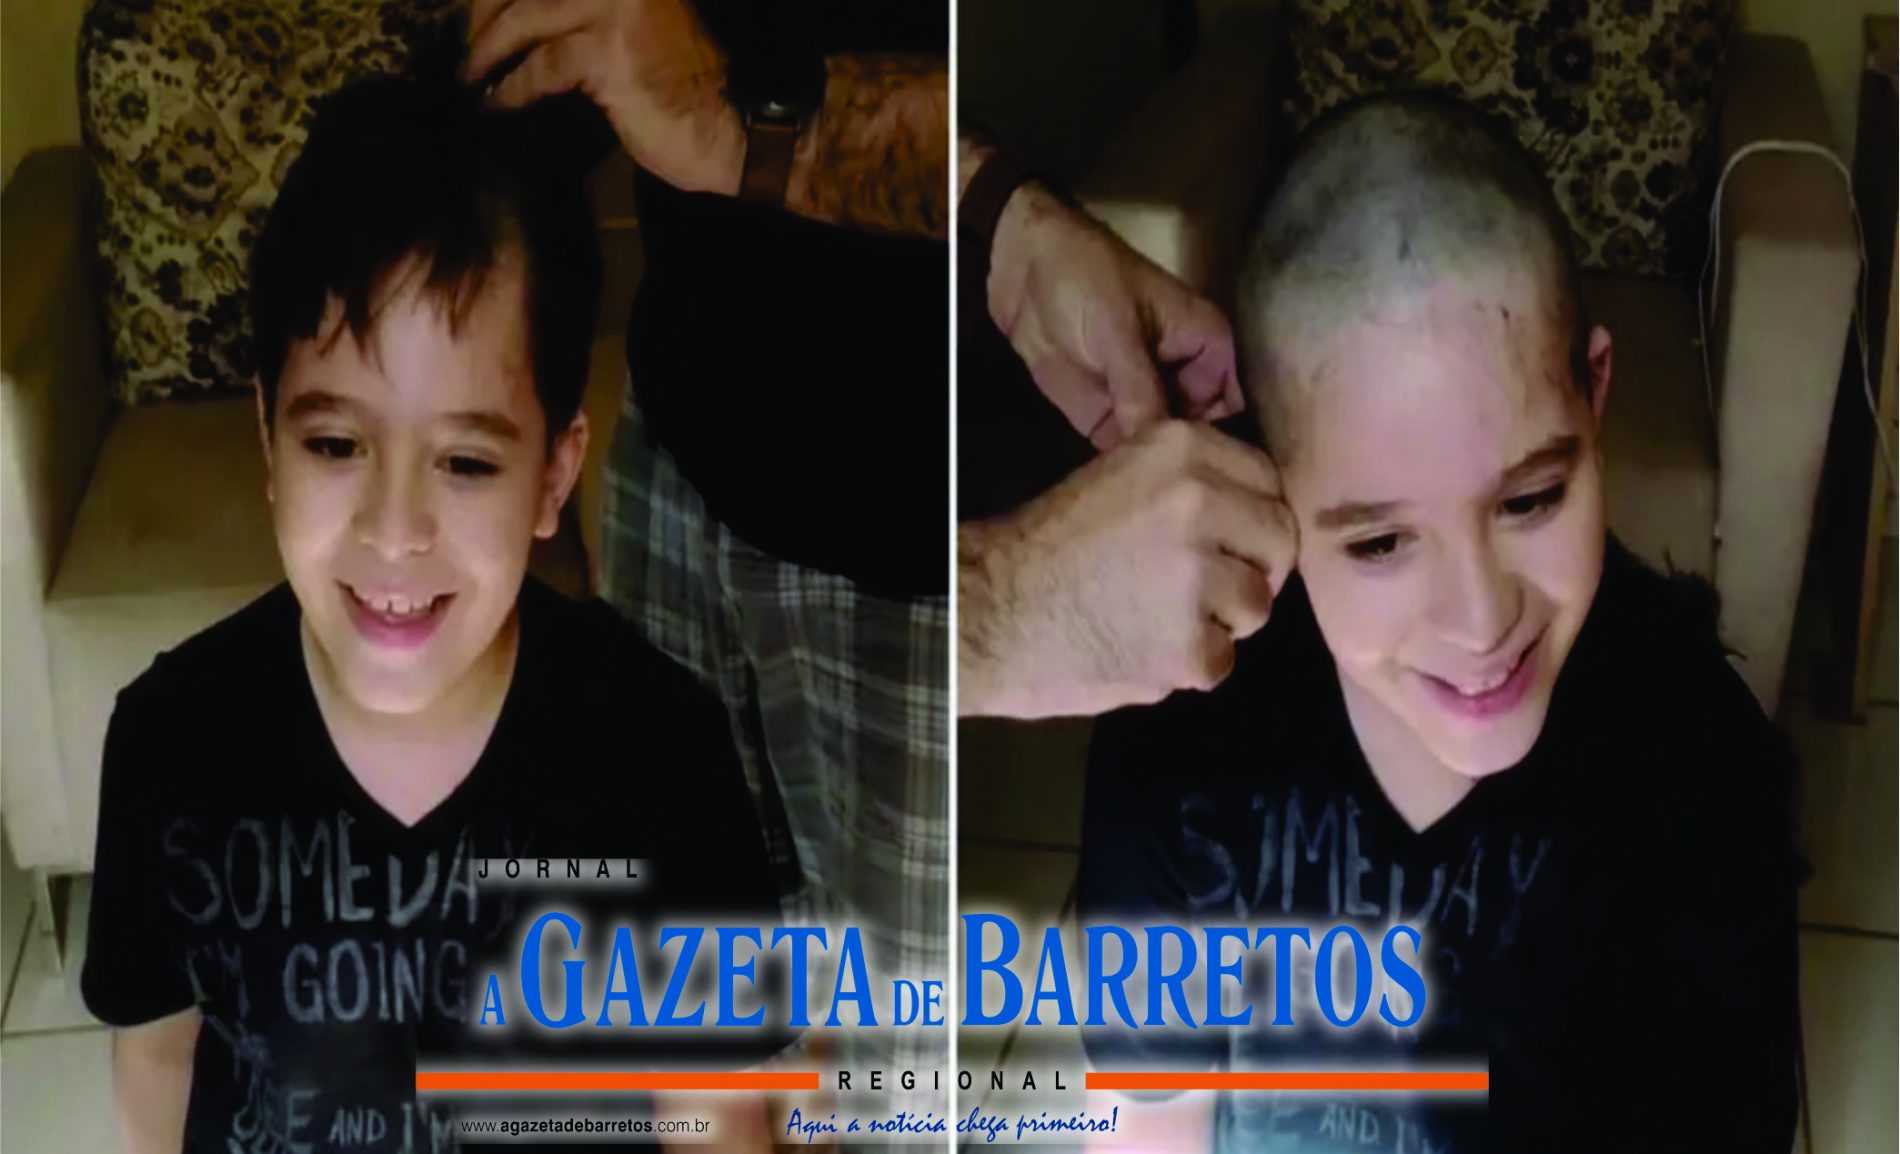 Menino raspa cabelo em apoio a amigo internado com câncer em Barretos